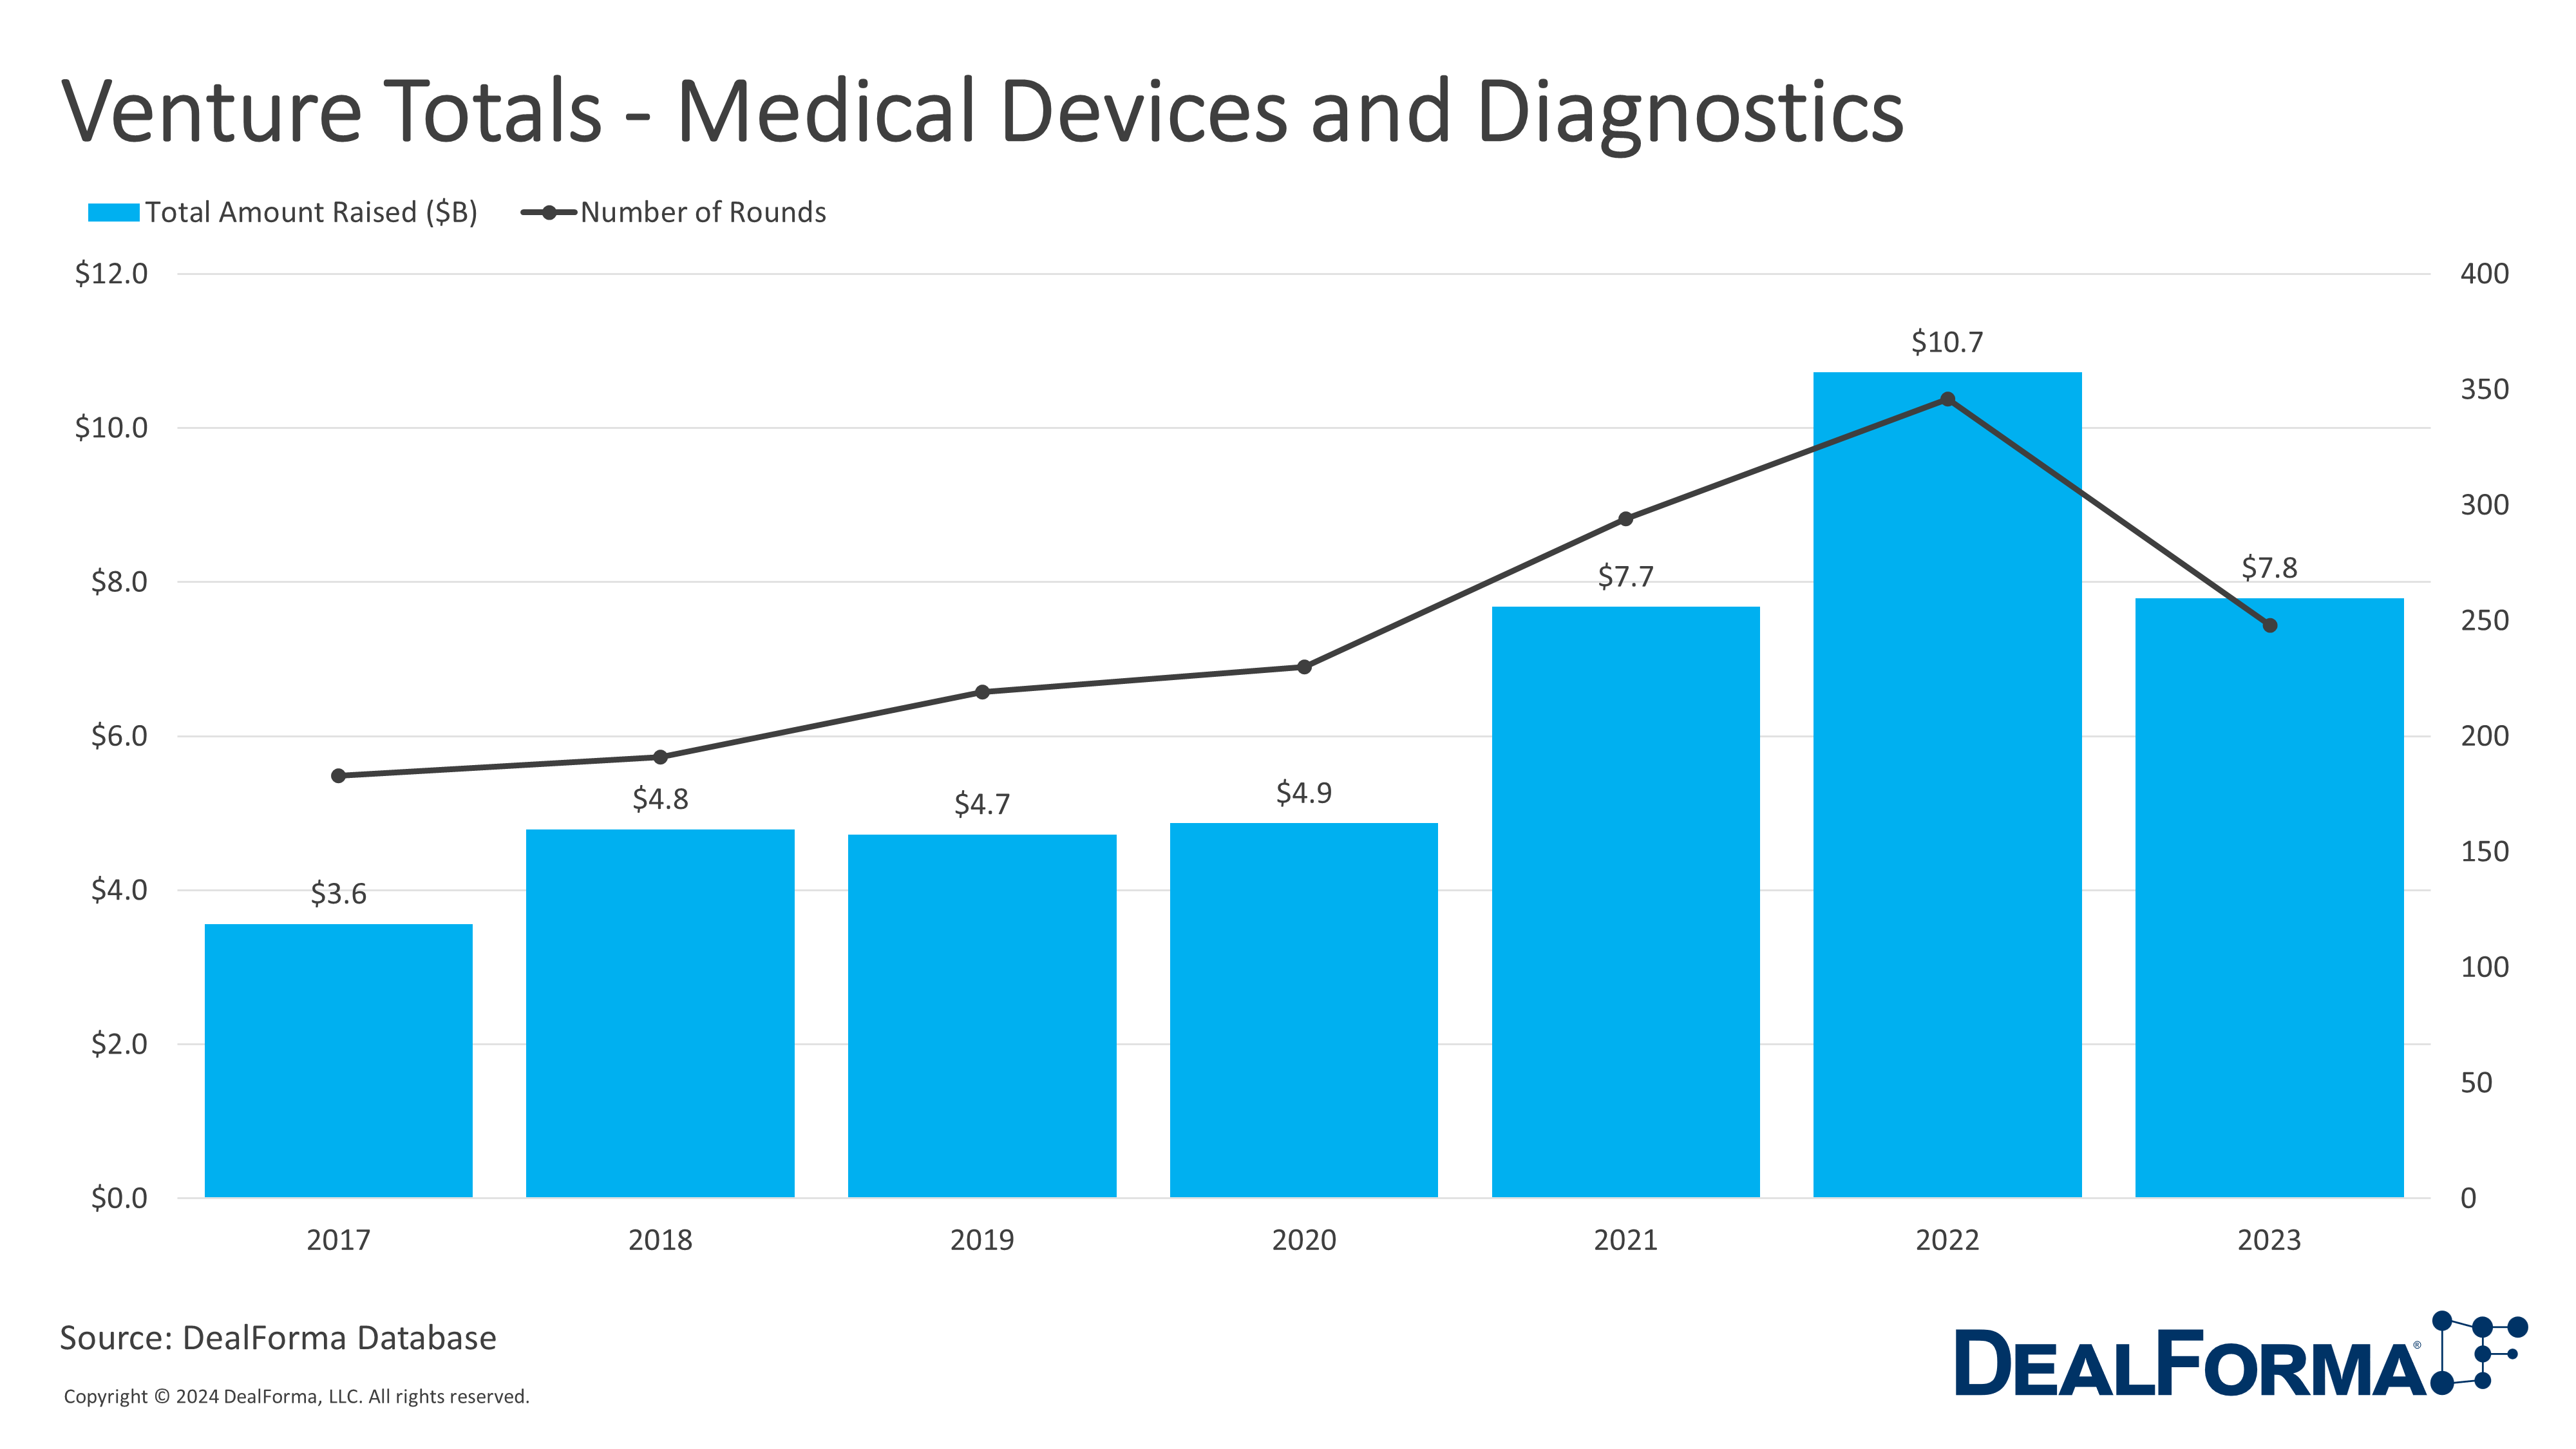 Venture Totals - Medical Devices and Diagnostics